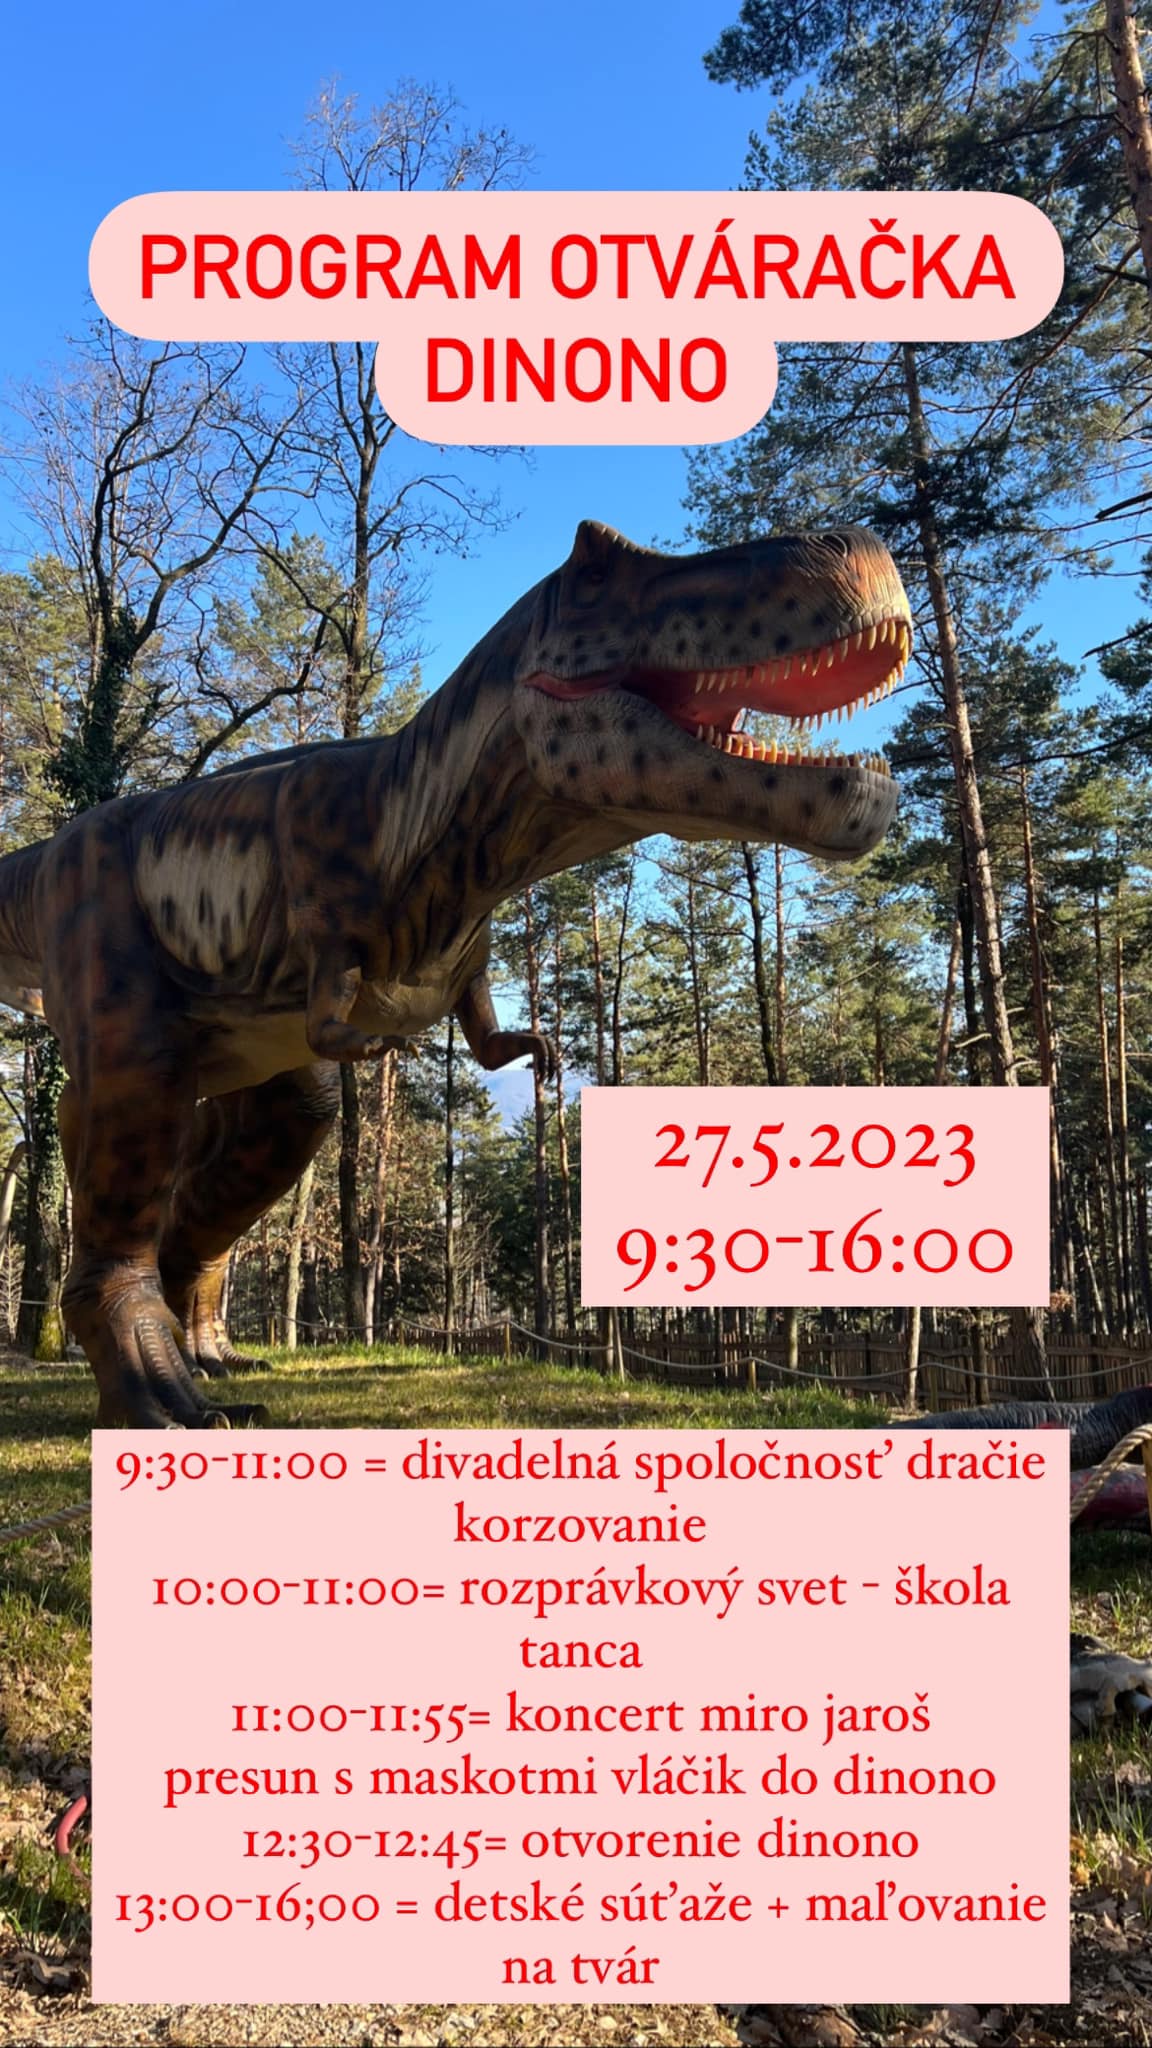 Oficiálne otvorenie Dino parku -DINONO